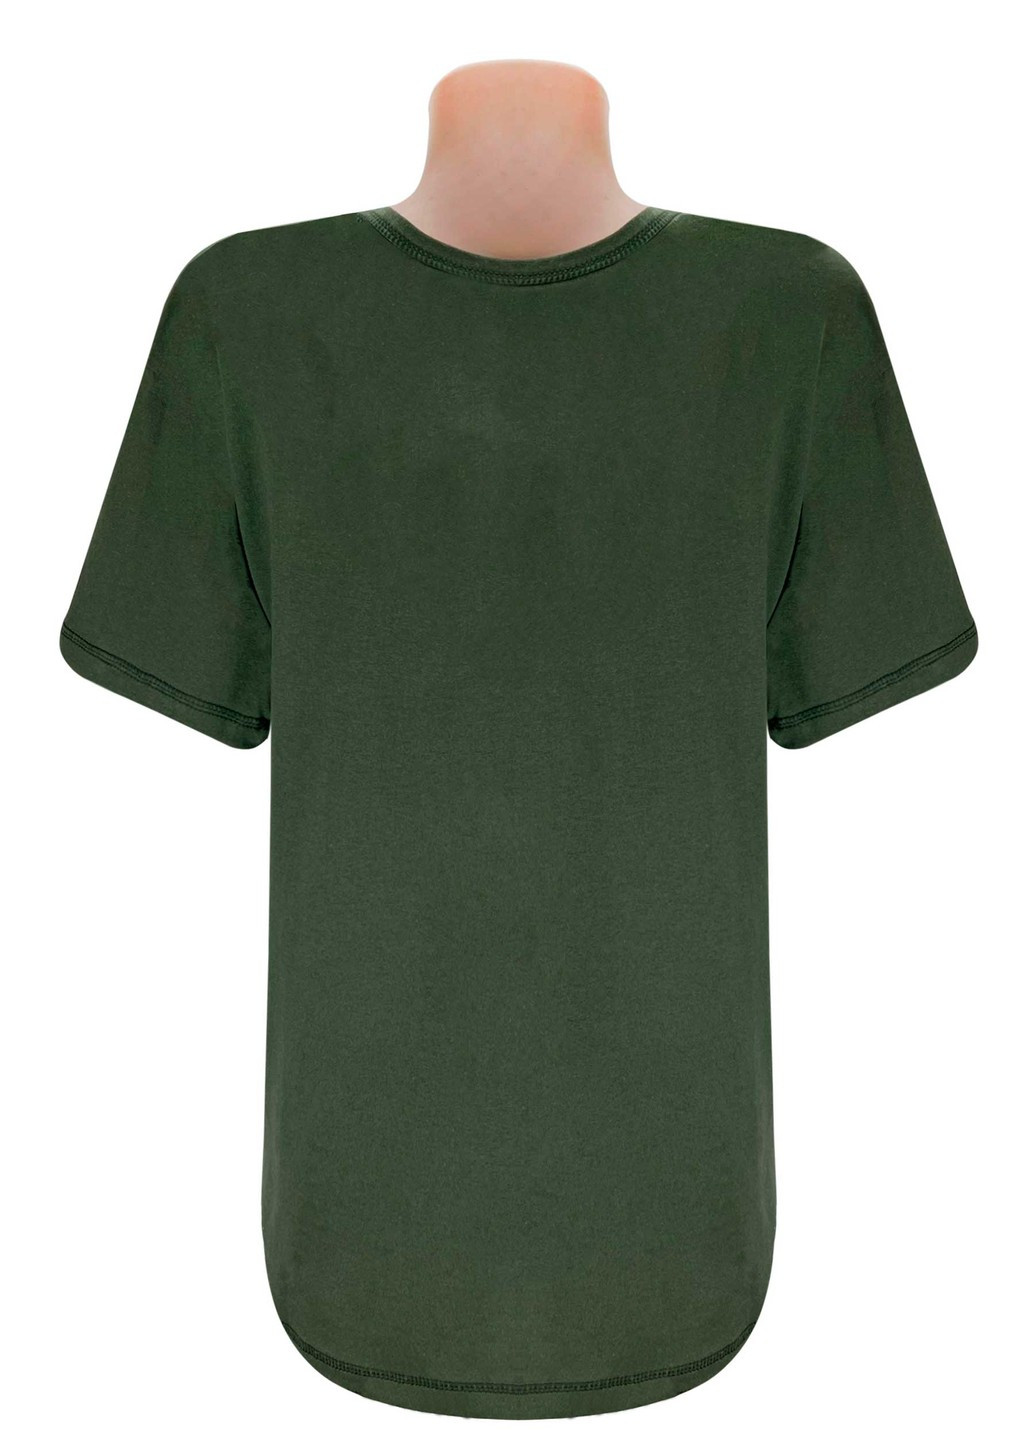 Хаки (оливковая) всесезон футболка женская/мужская с коротким рукавом Жемчужина стилей 777